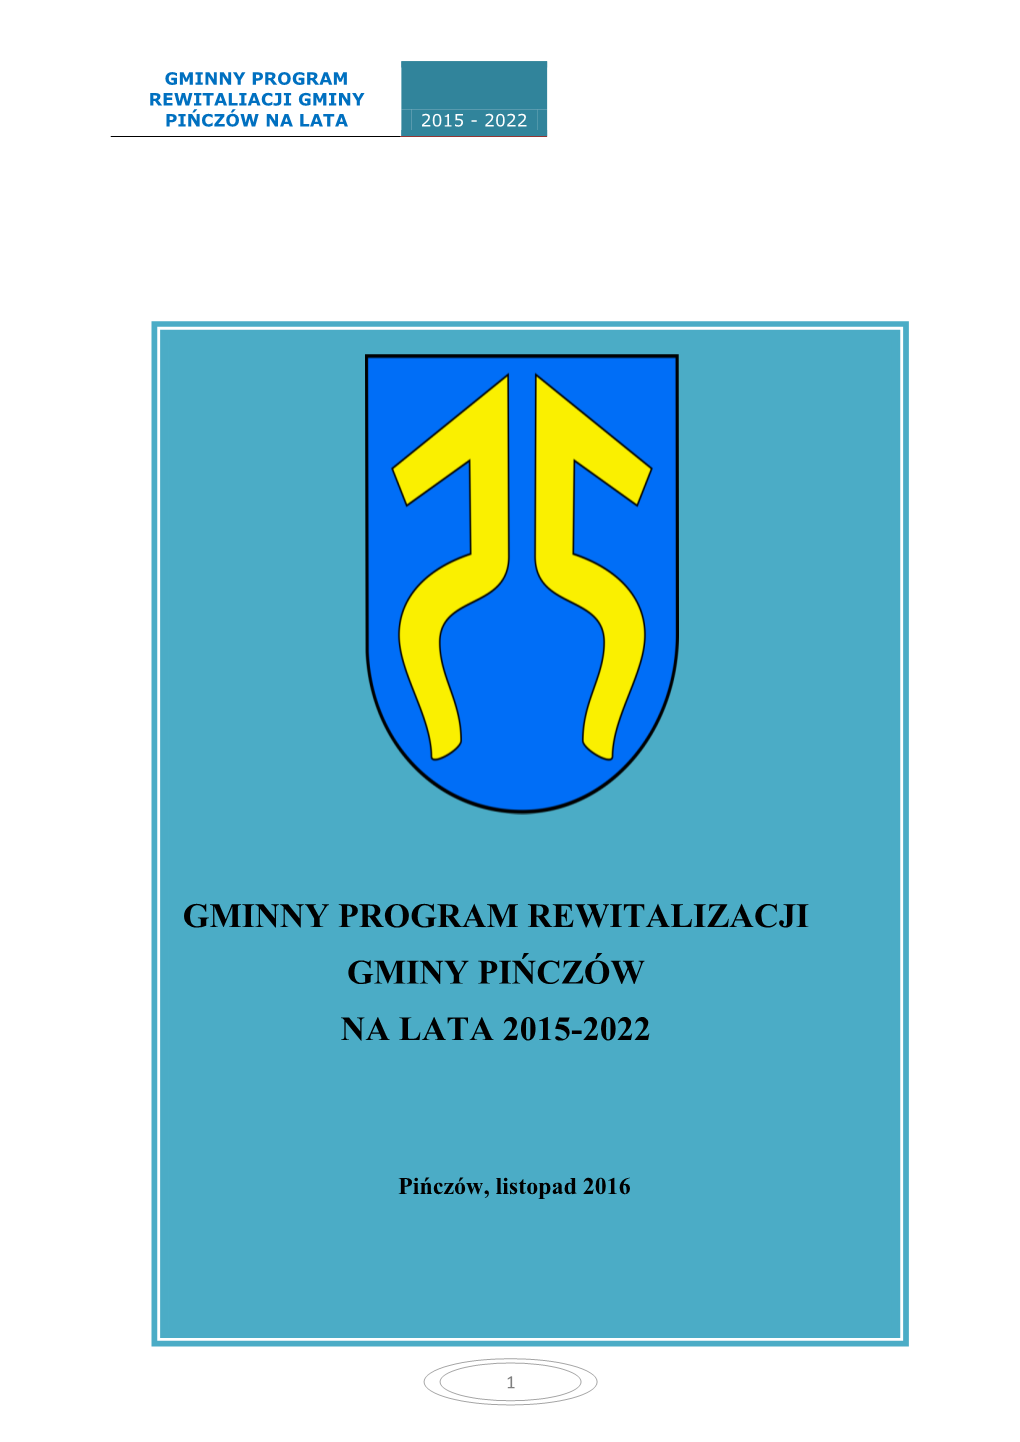 Gminny Program Rewitalizacji Gminy Pińczów Na Lata 2015-2022